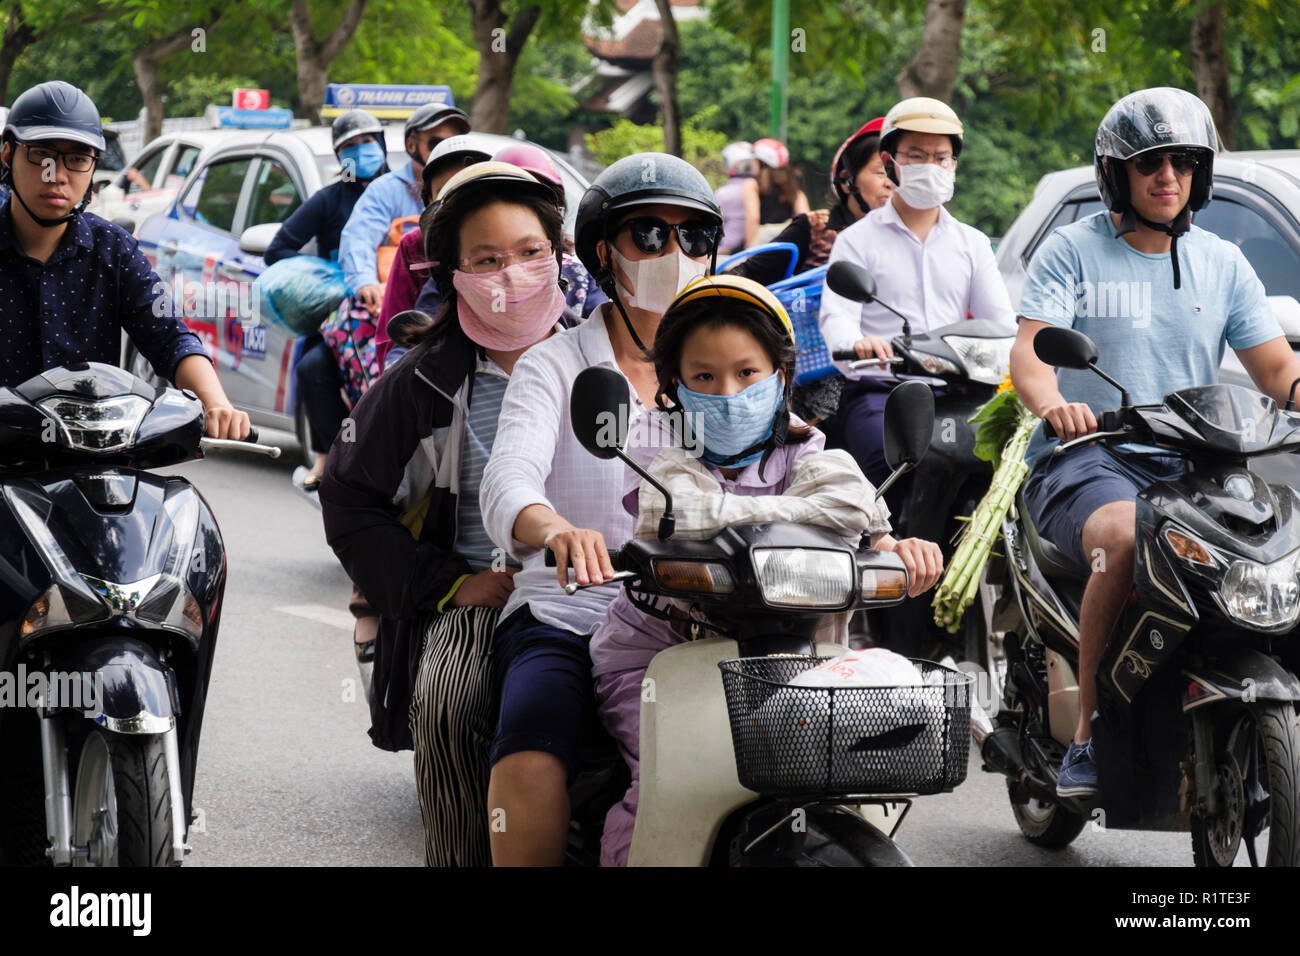 Scena di strada con persone che indossano maschere viso sulla moto e scooter per proteggere contro l'inquinamento atmosferico in una trafficata strada urbana. Hanoi, Vietnam Asia Foto Stock